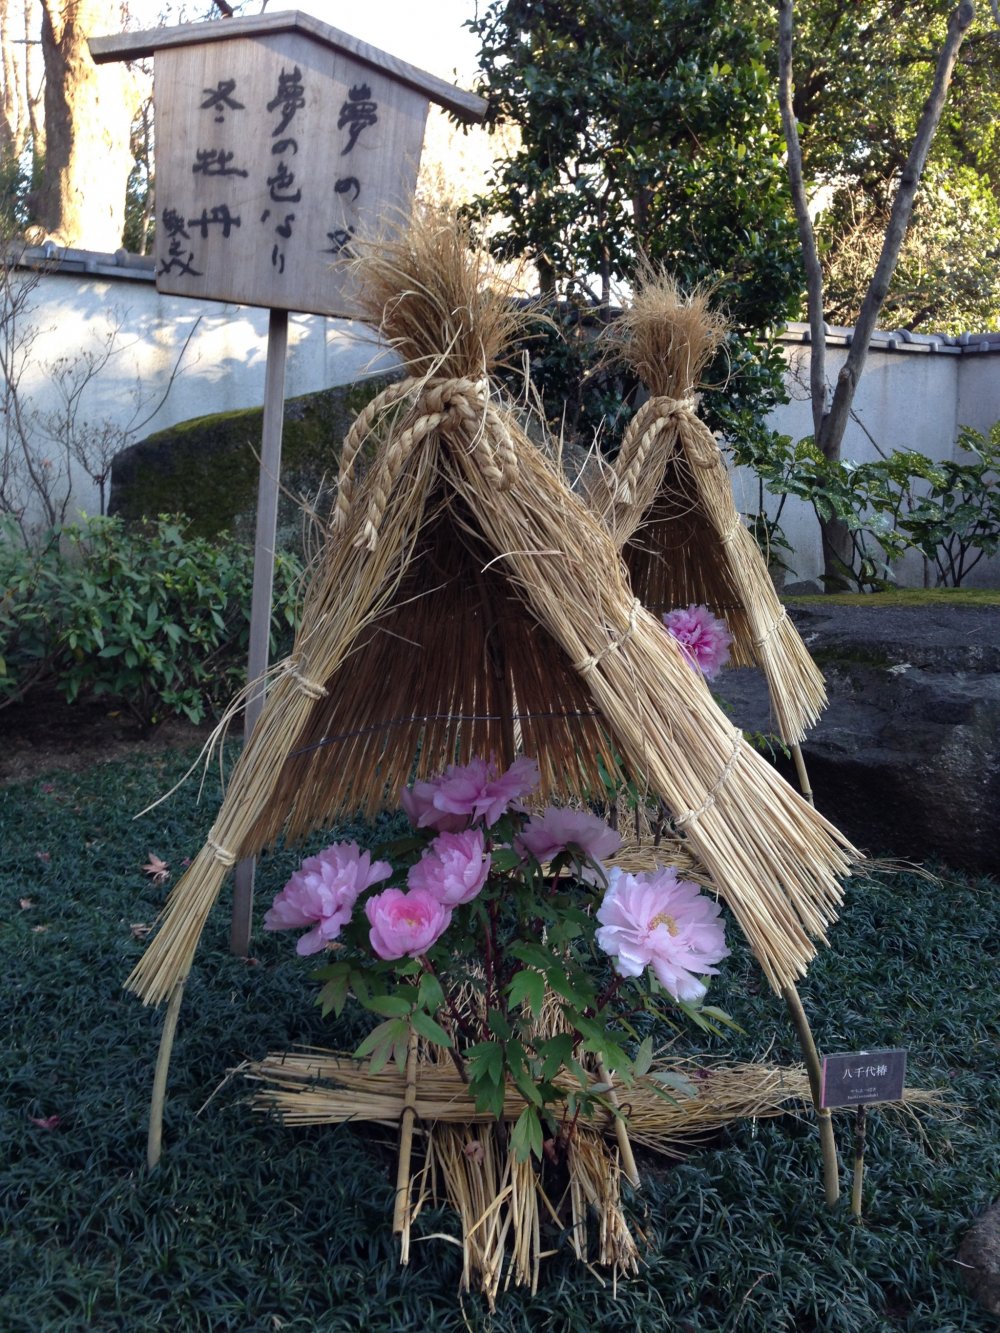 Di musim dingin, setiap tanaman ditutupi dengan "topi" jerami kecil yang cukup mengingatkannya pada kabuto samurai